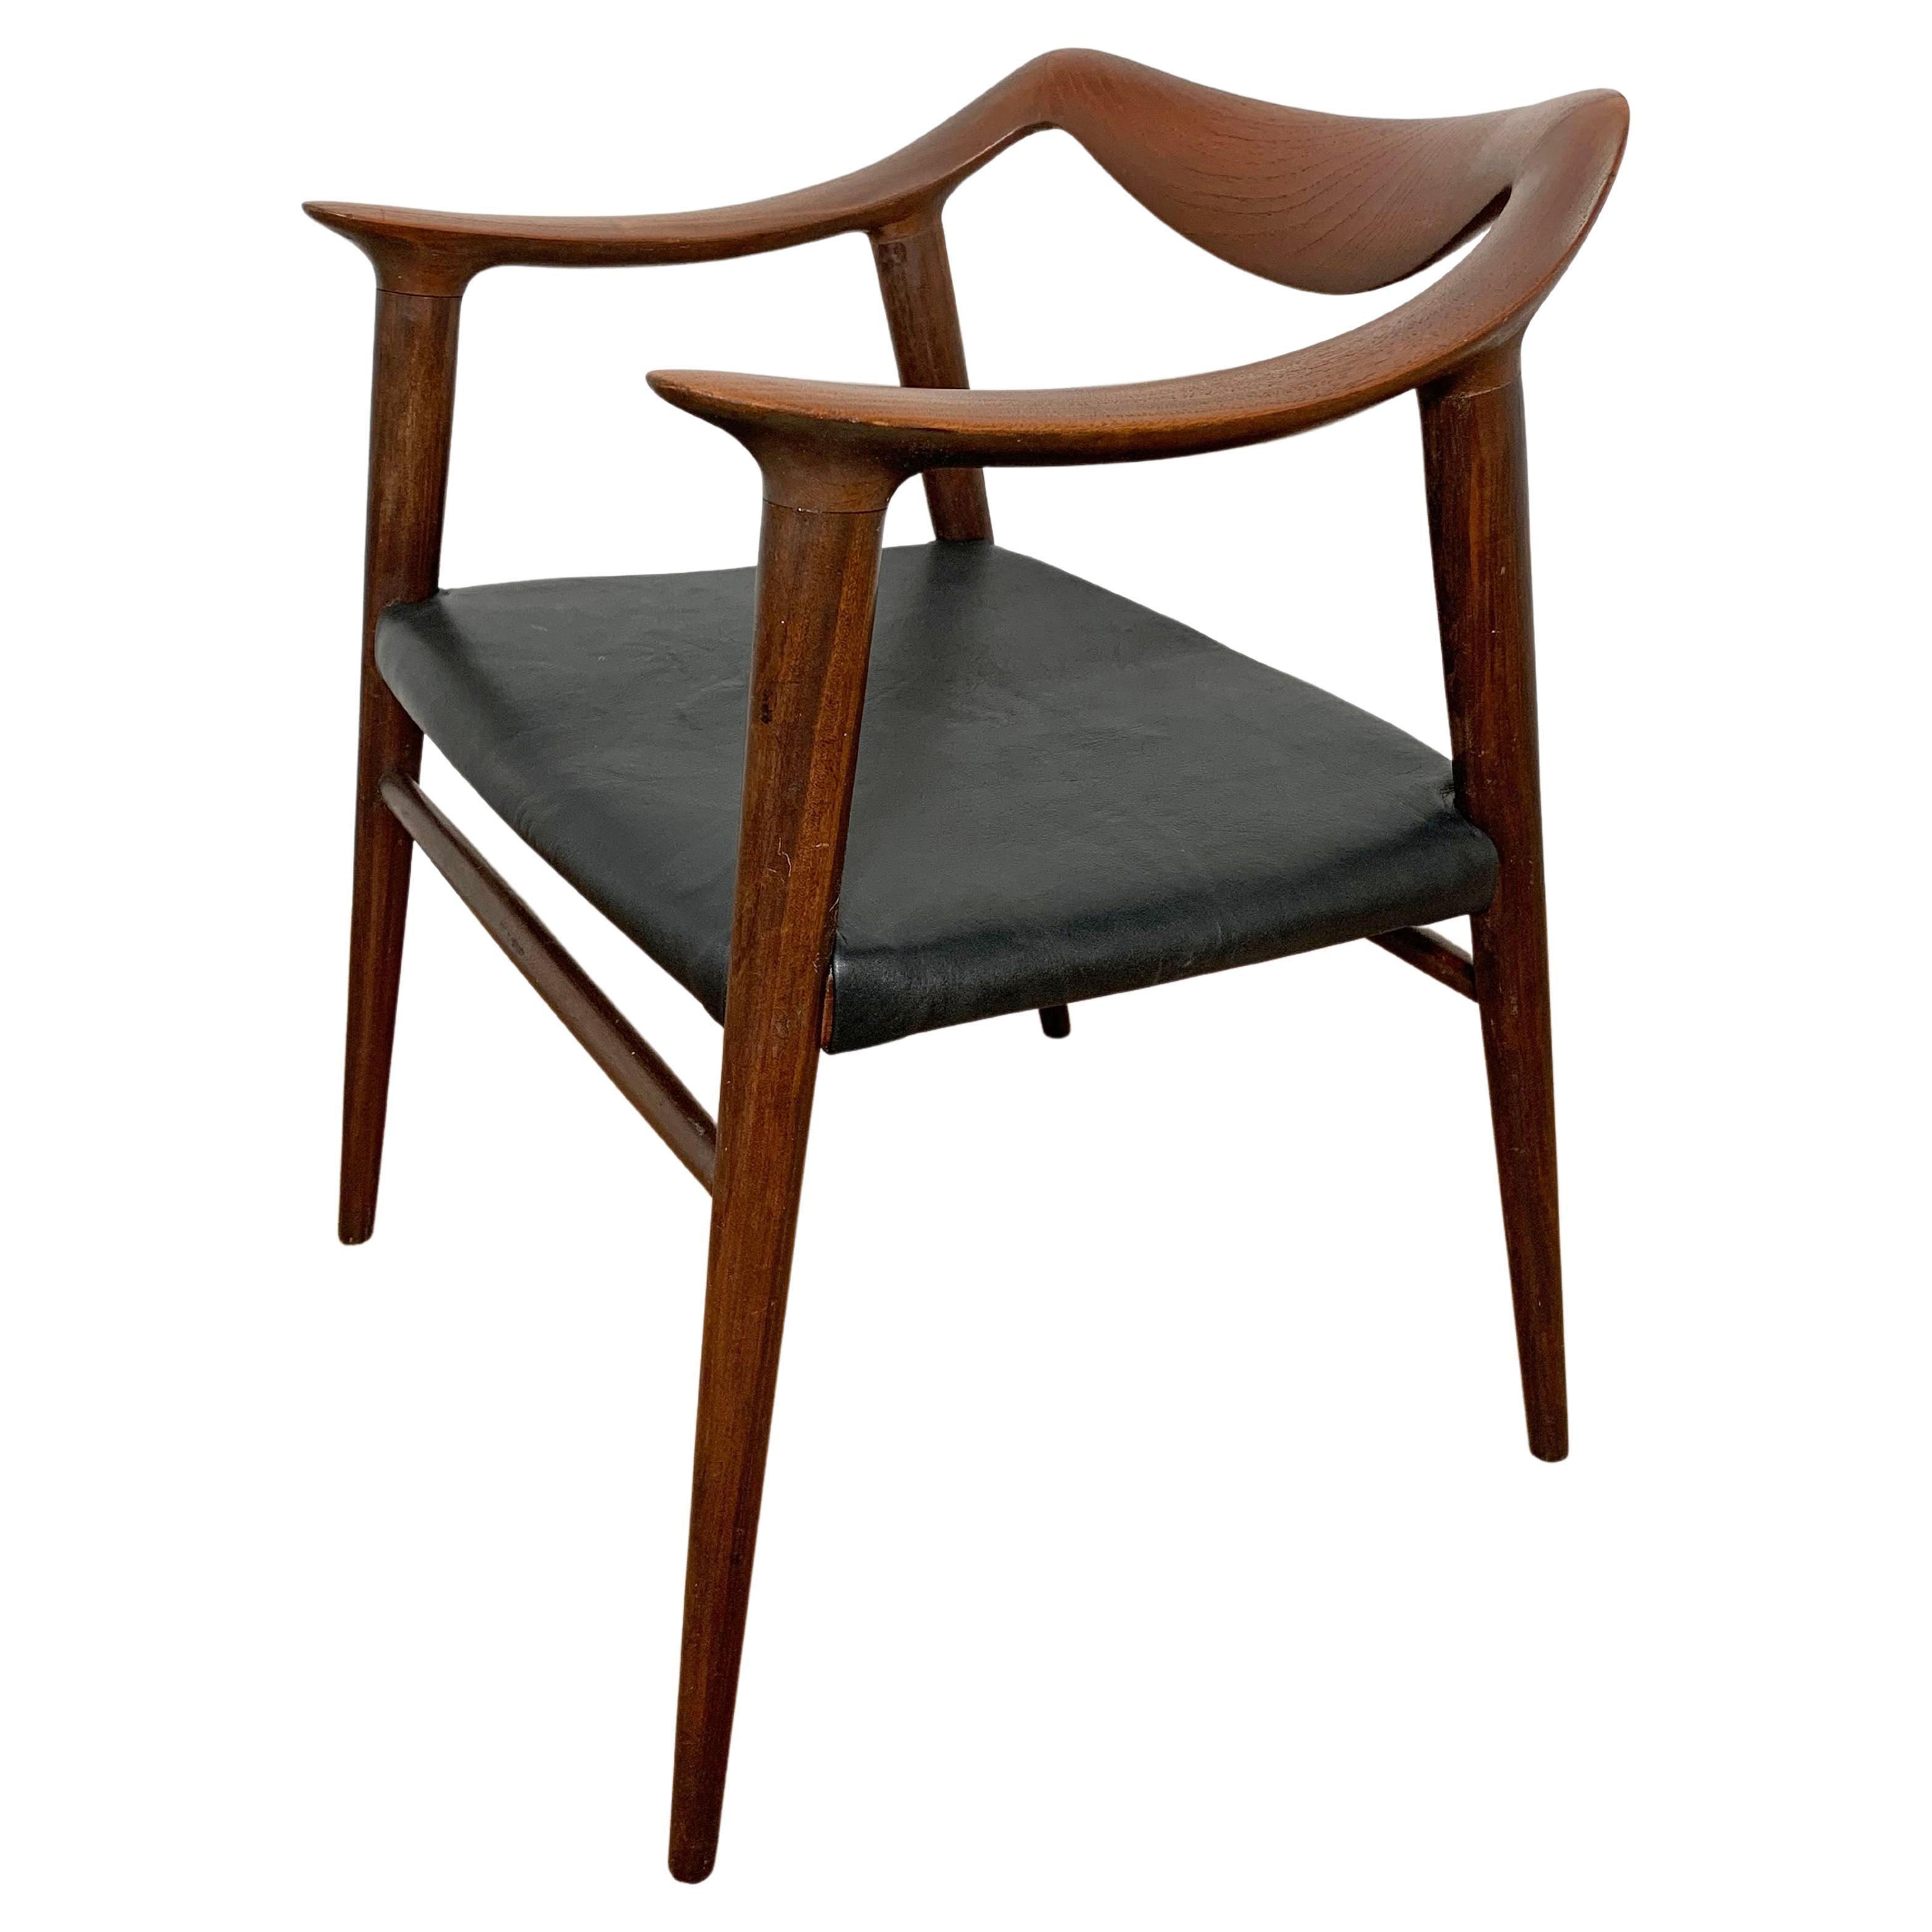 Rastad and Relling Teak "Bambi" Lounge Chair for Gustav Bahus Circa 1950s